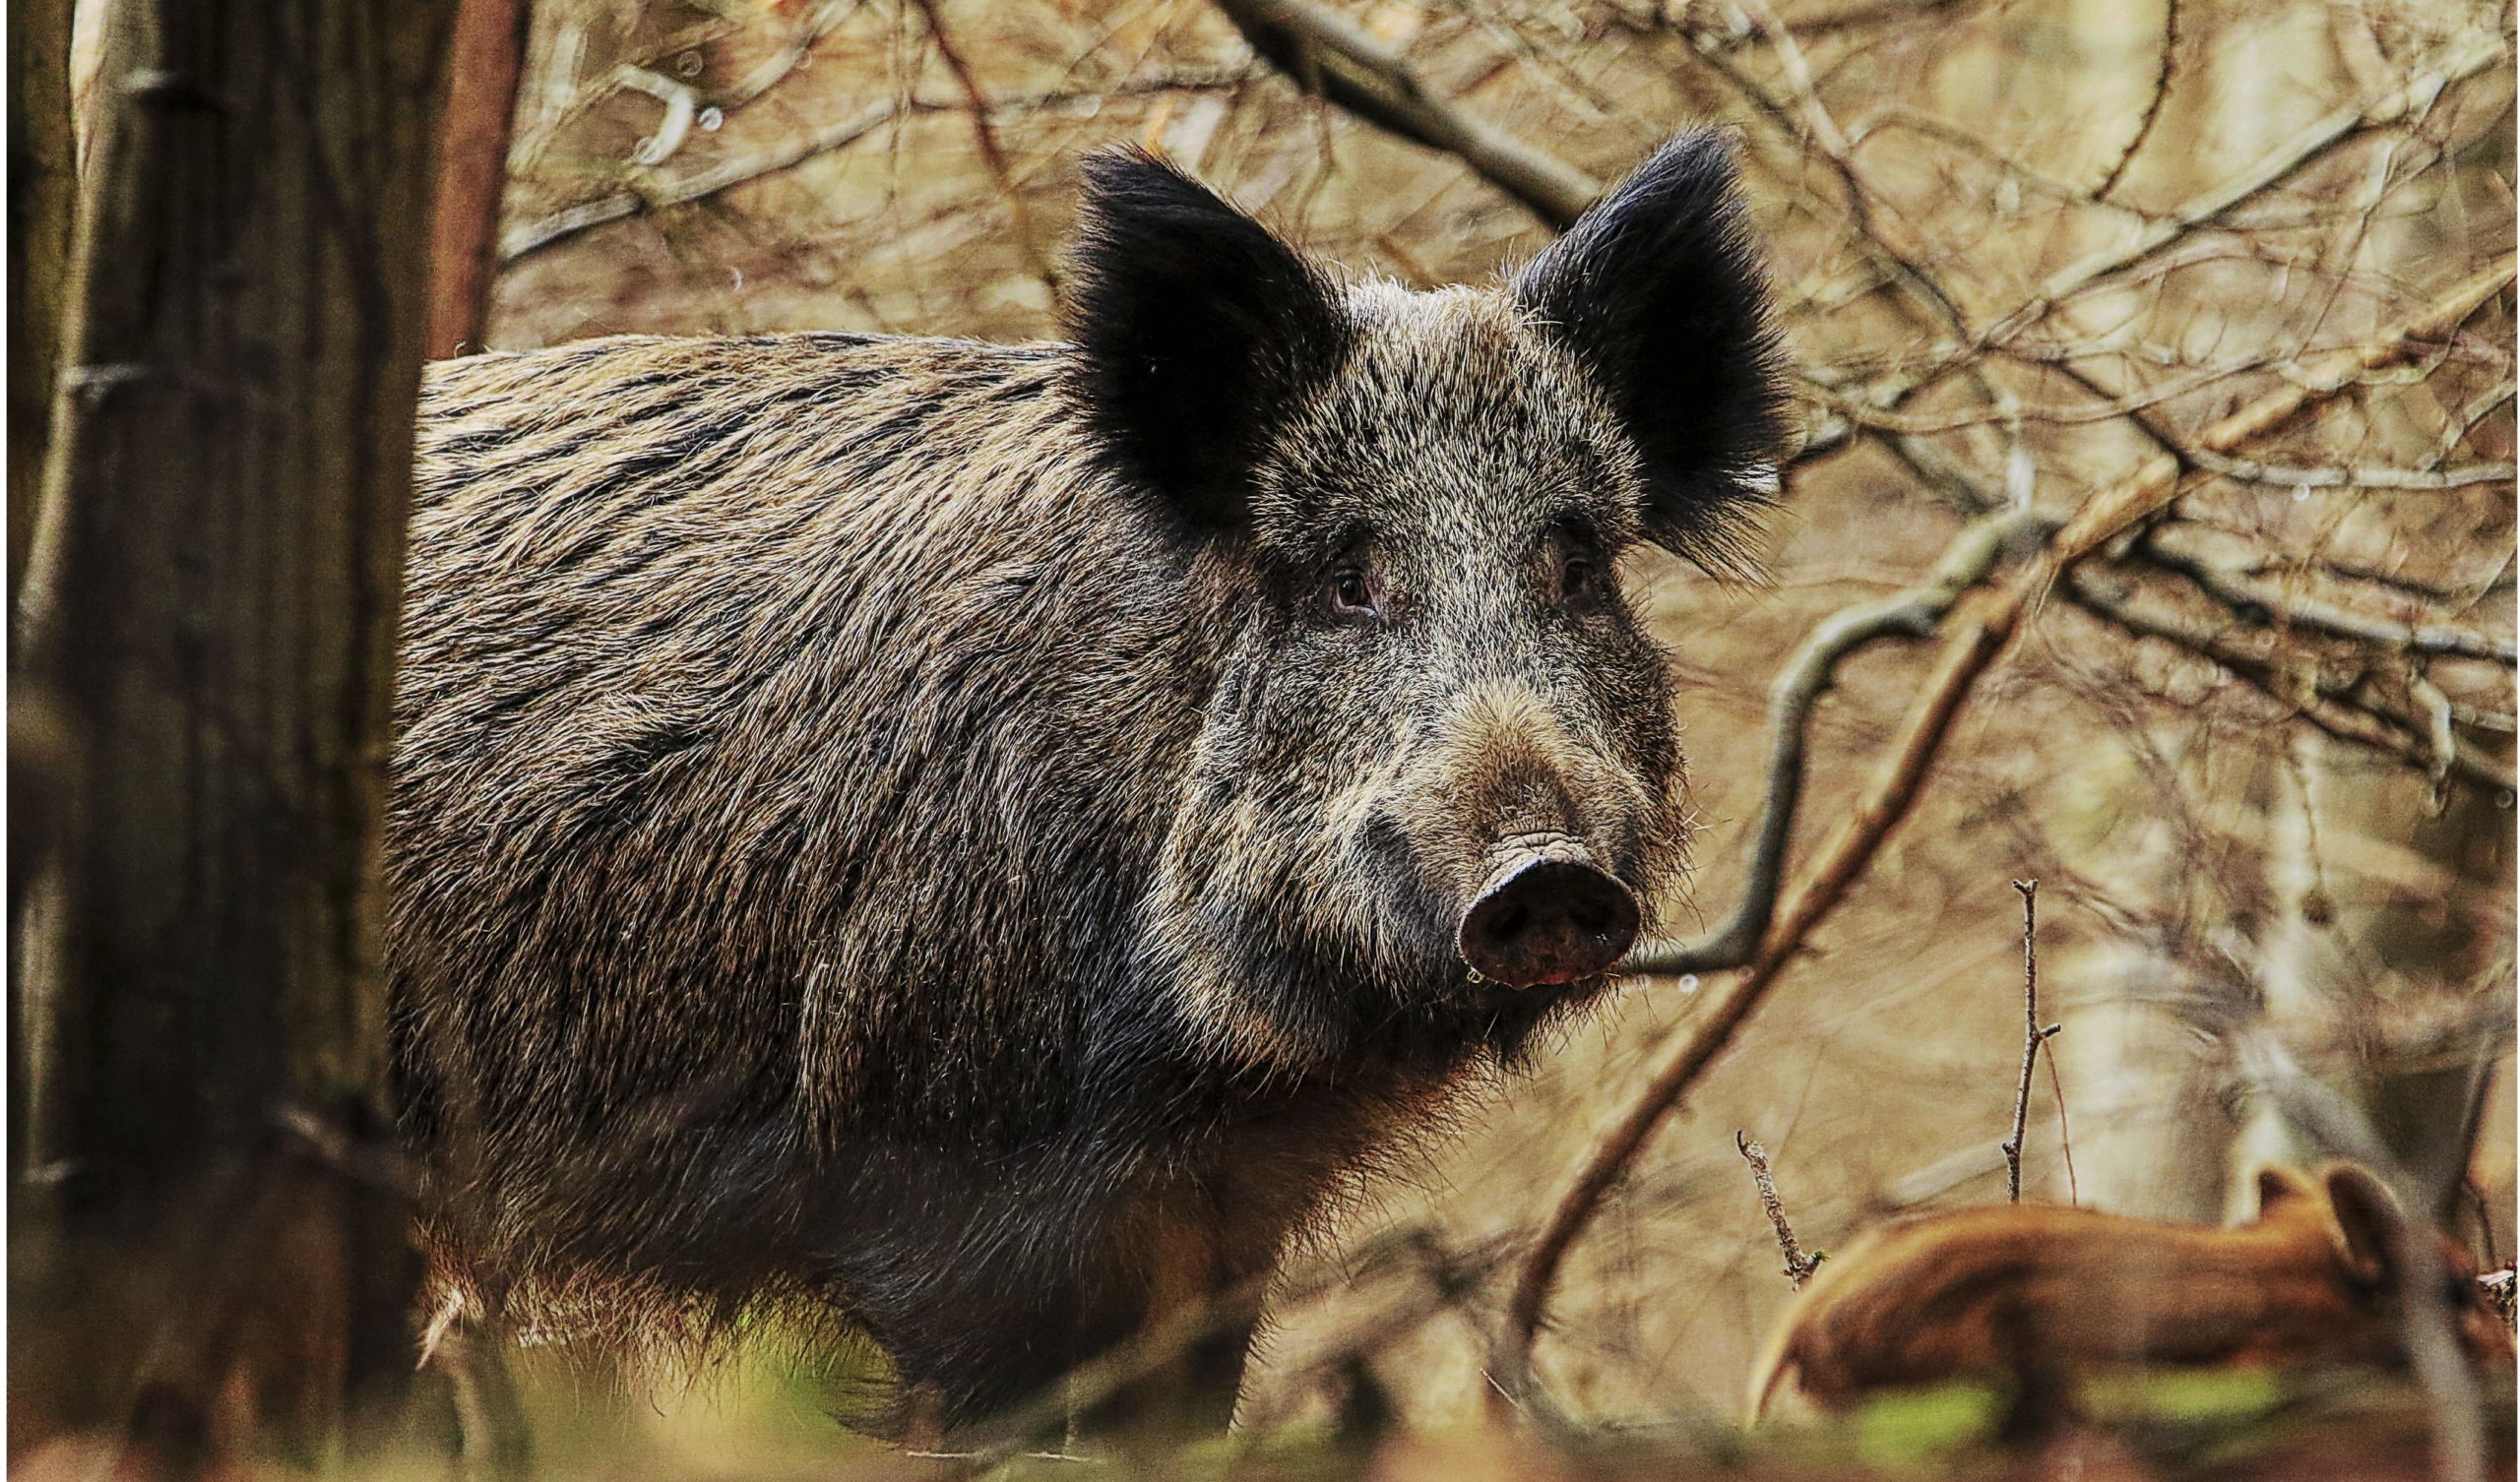 Peste porcine:  la forêt interdite